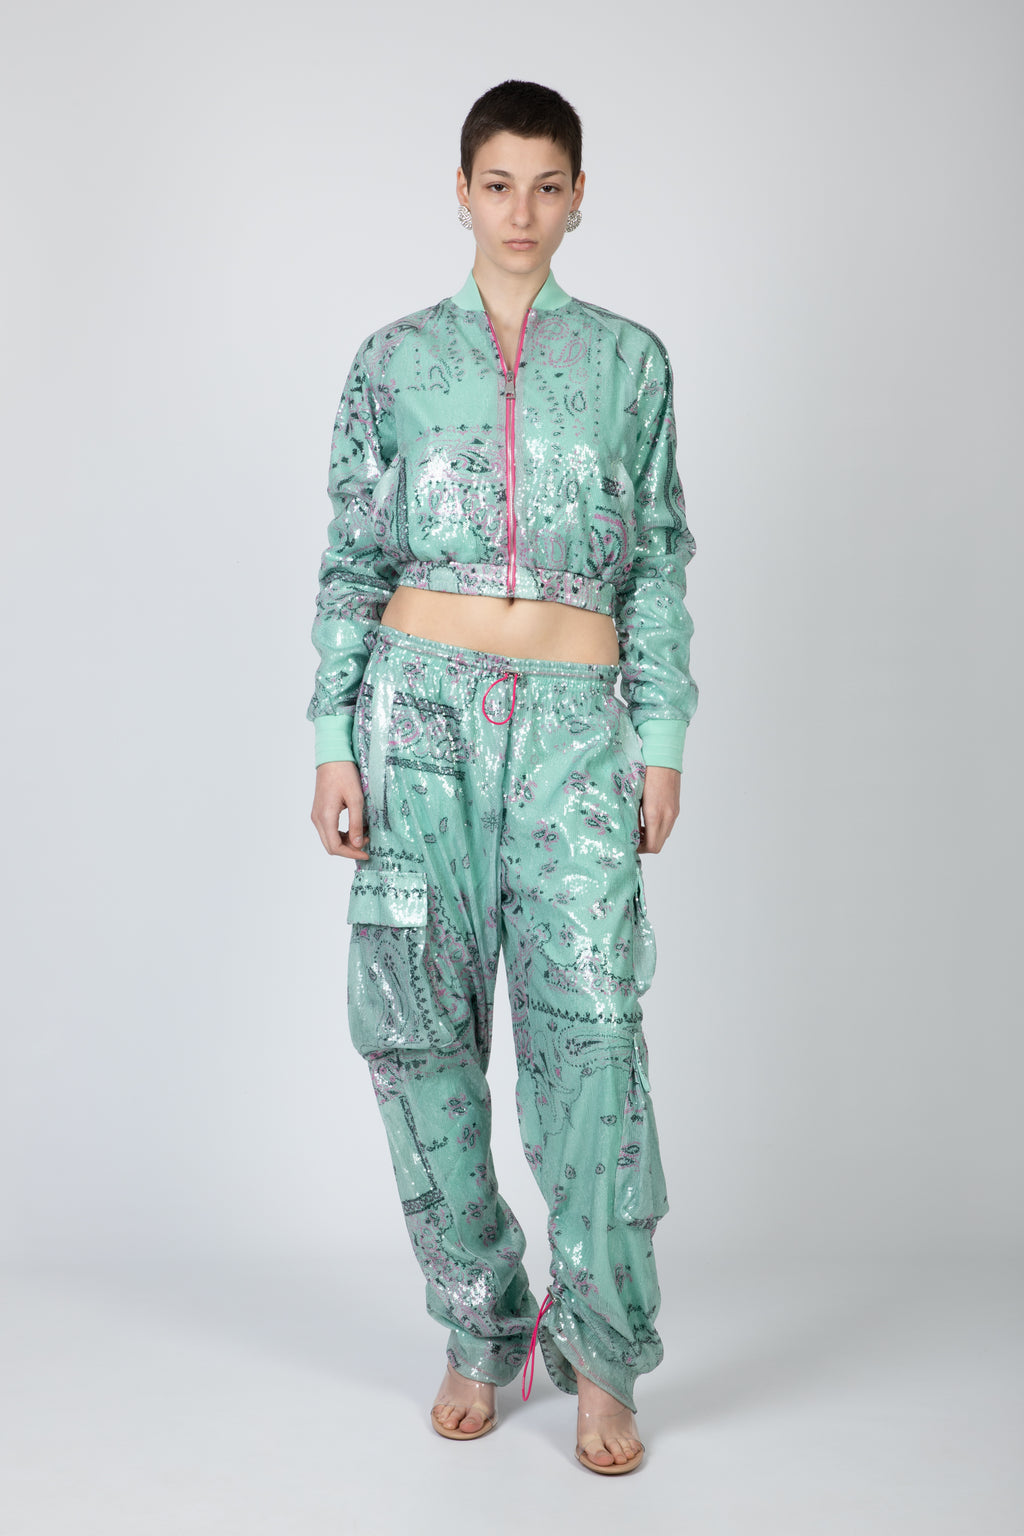 alt-image__Aquamarine-green-bandana-printed-track-jacket-with-sequins---Track-Jacket-Paillettes-Bandana-